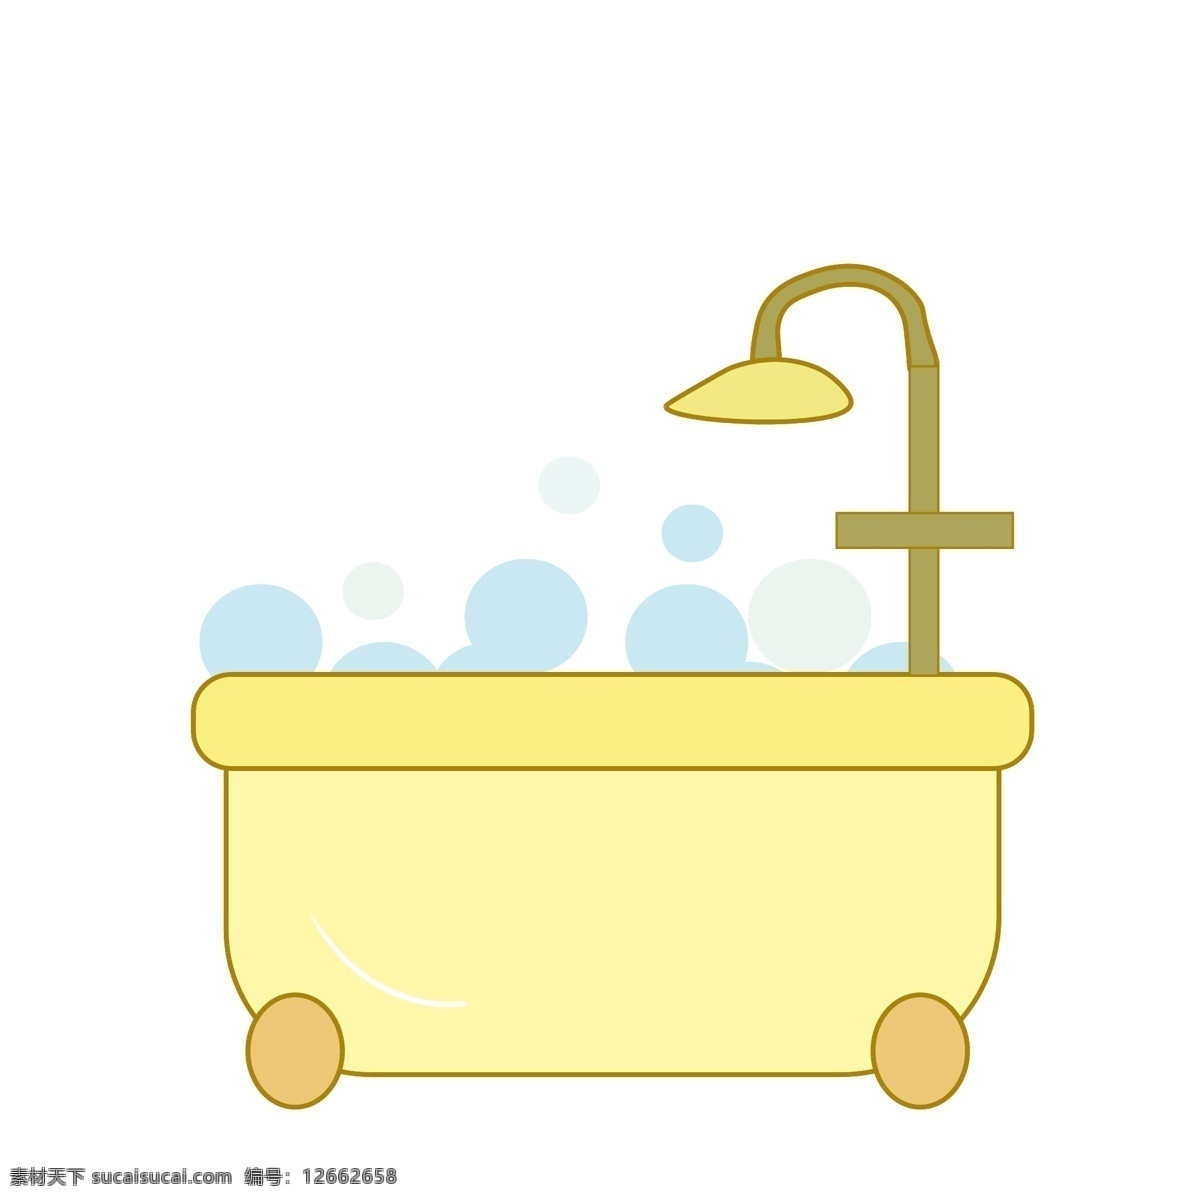 黄色洗浴浴缸 家具 花洒 洗浴